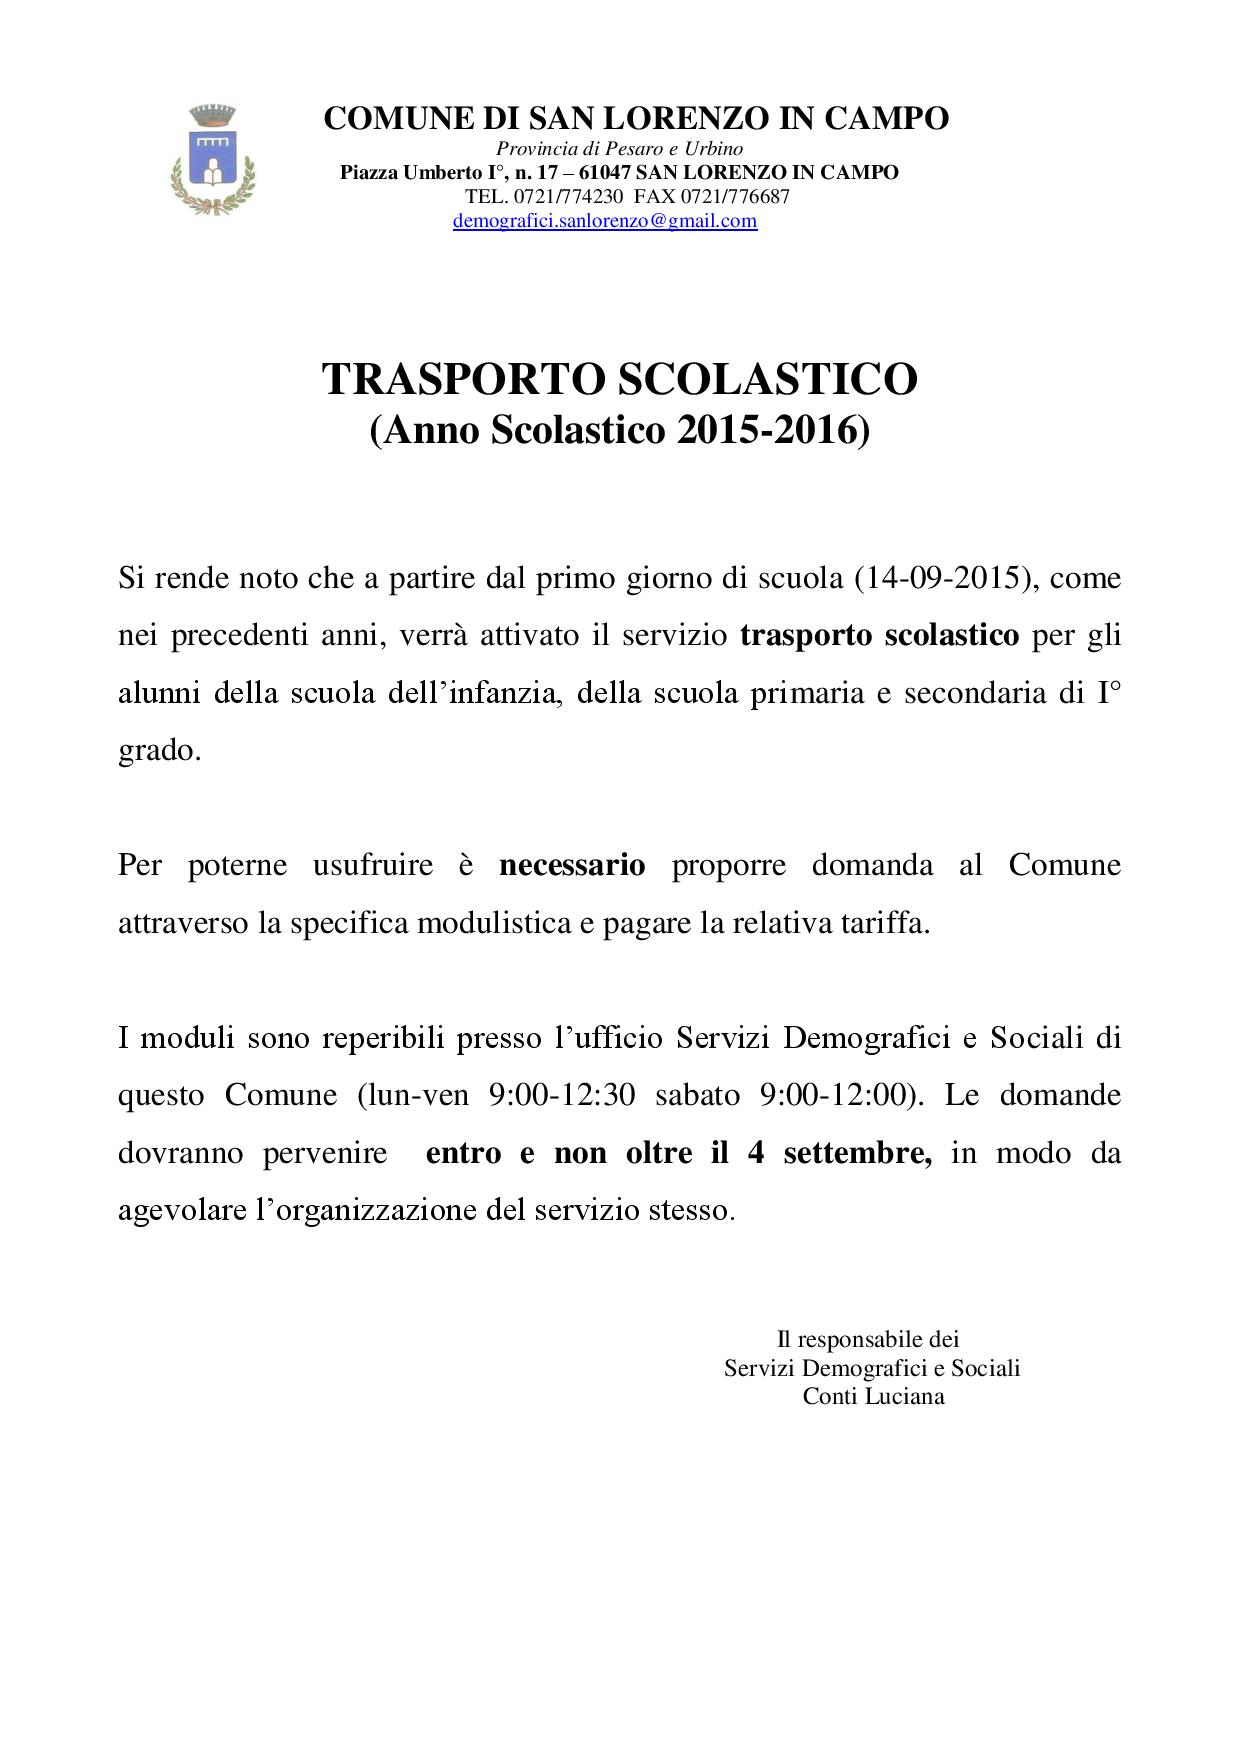 TRASPORTO SCOLASTICO 2014 2015-page-001